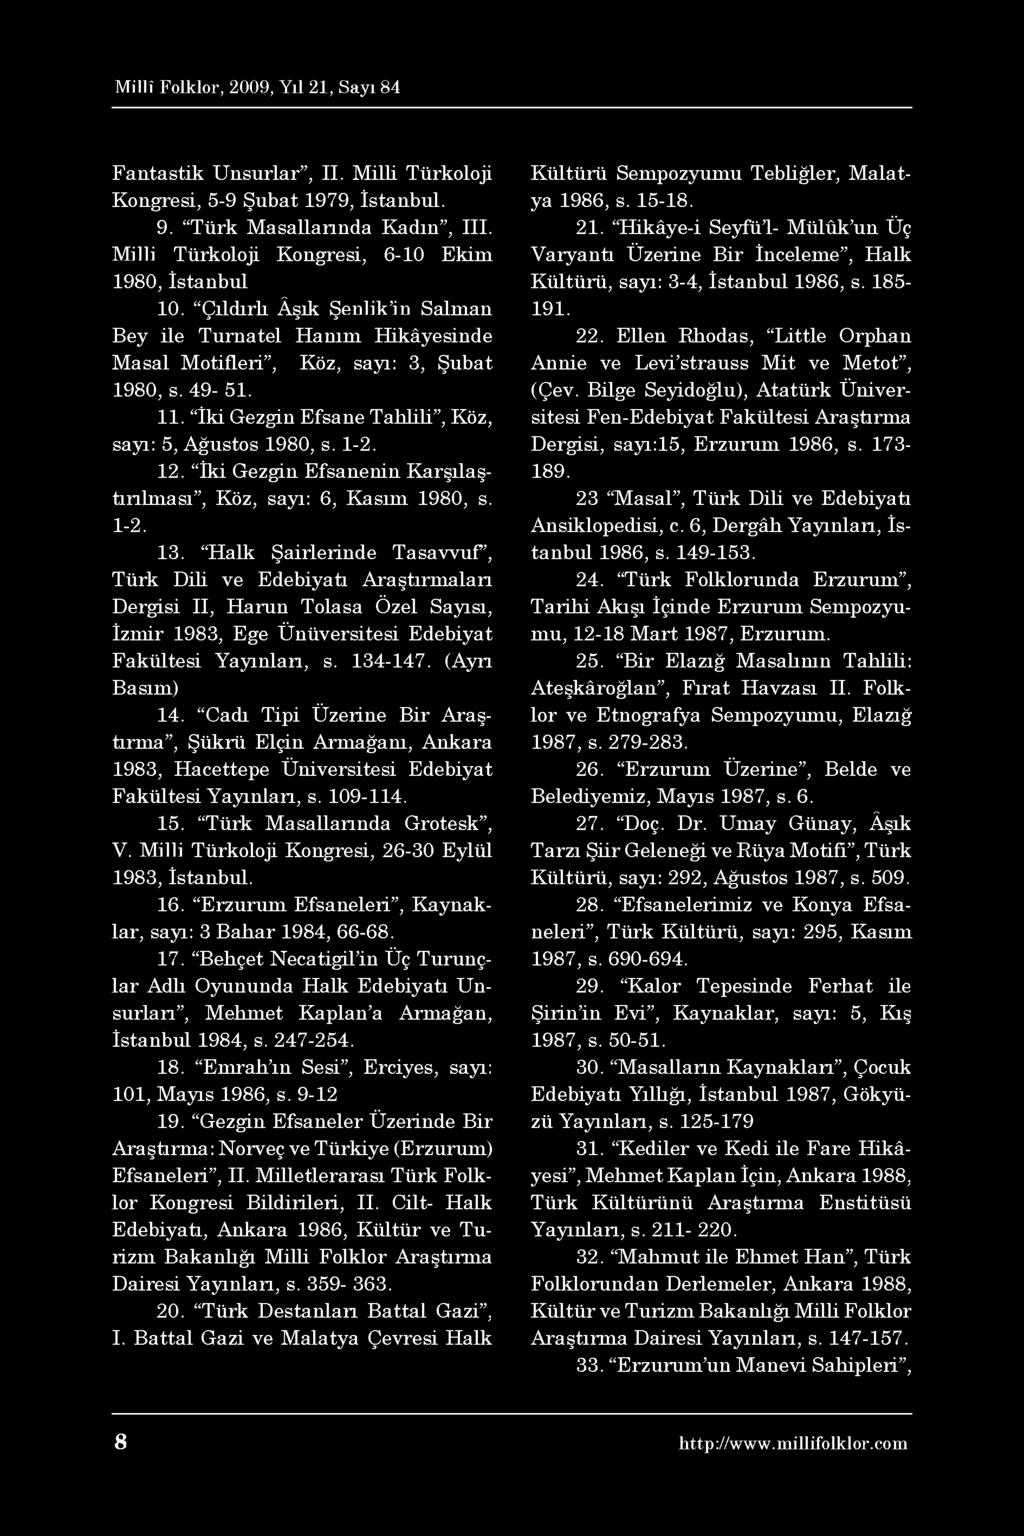 Fantastik Unsurlar, II. Milli Türkoloji Kongresi, 5-9 Şubat 1979, İstanbul. 9. Türk Masallarında Kadın, III. Milli Türkoloji Kongresi, 6-10 Ekim 1980, İstanbul 10.